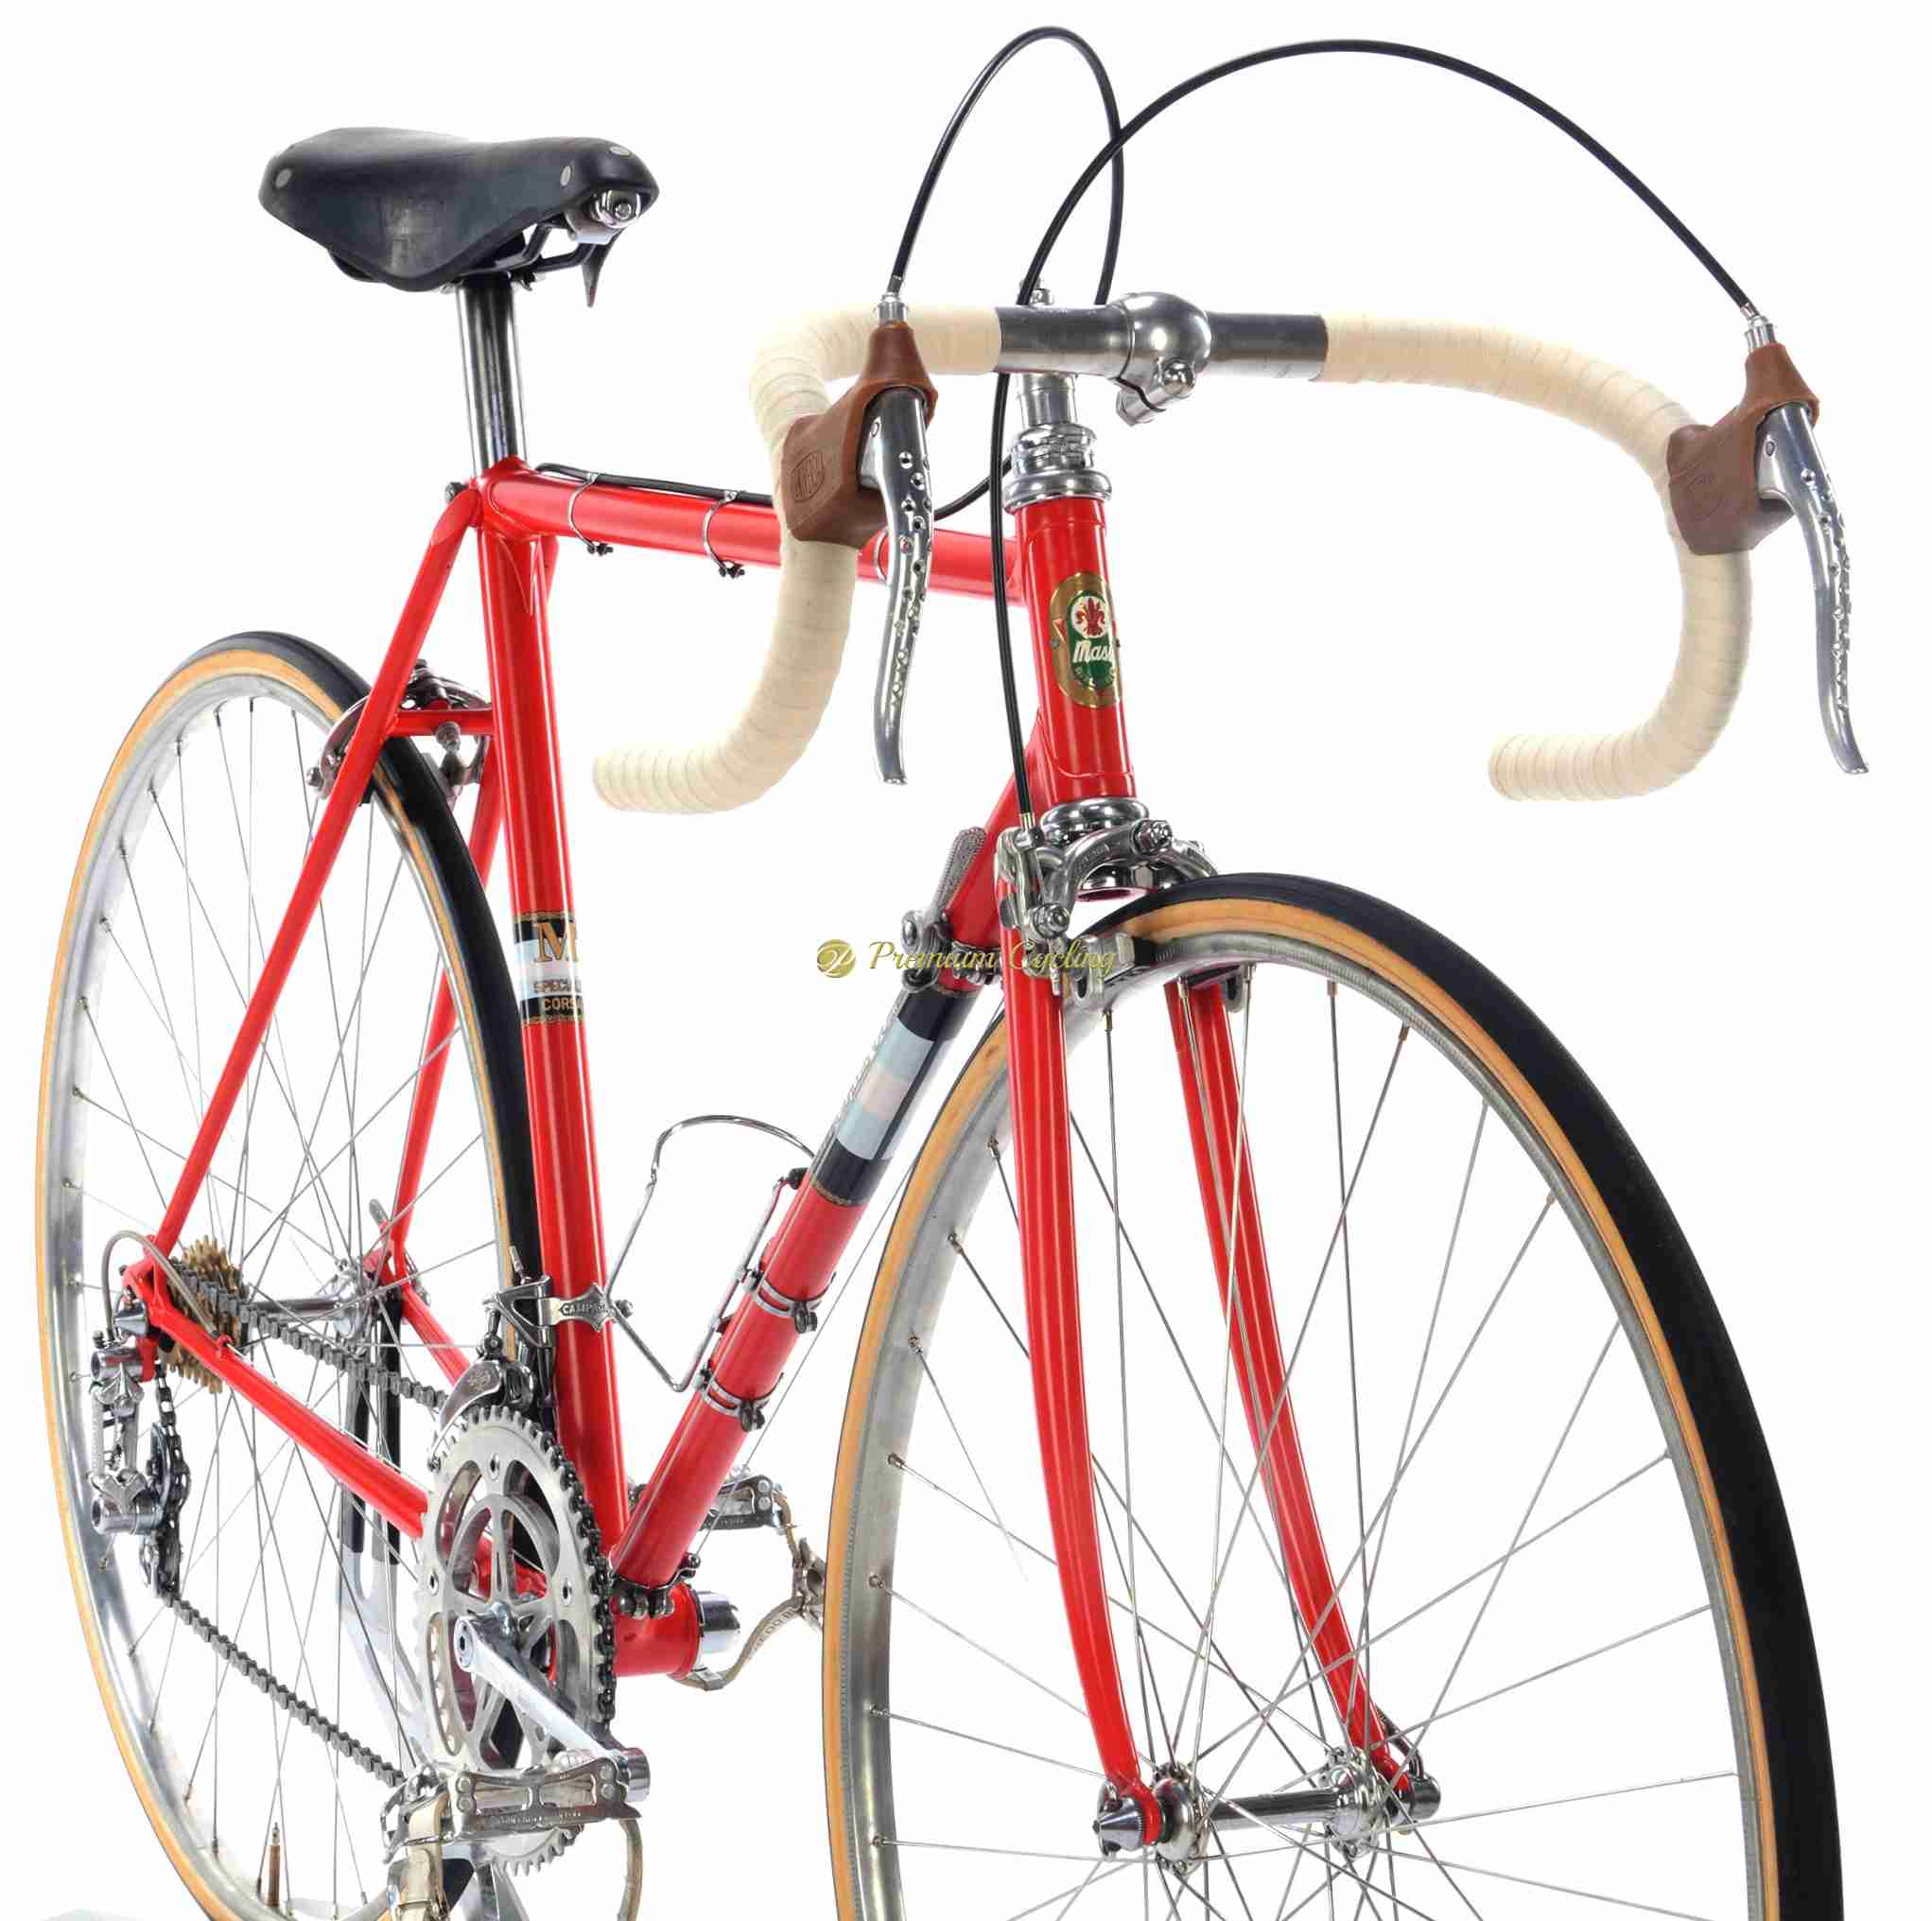 MASI Speciale Corsa, Campagnolo Gran Sport, 53cm (1957-58) – SOLD